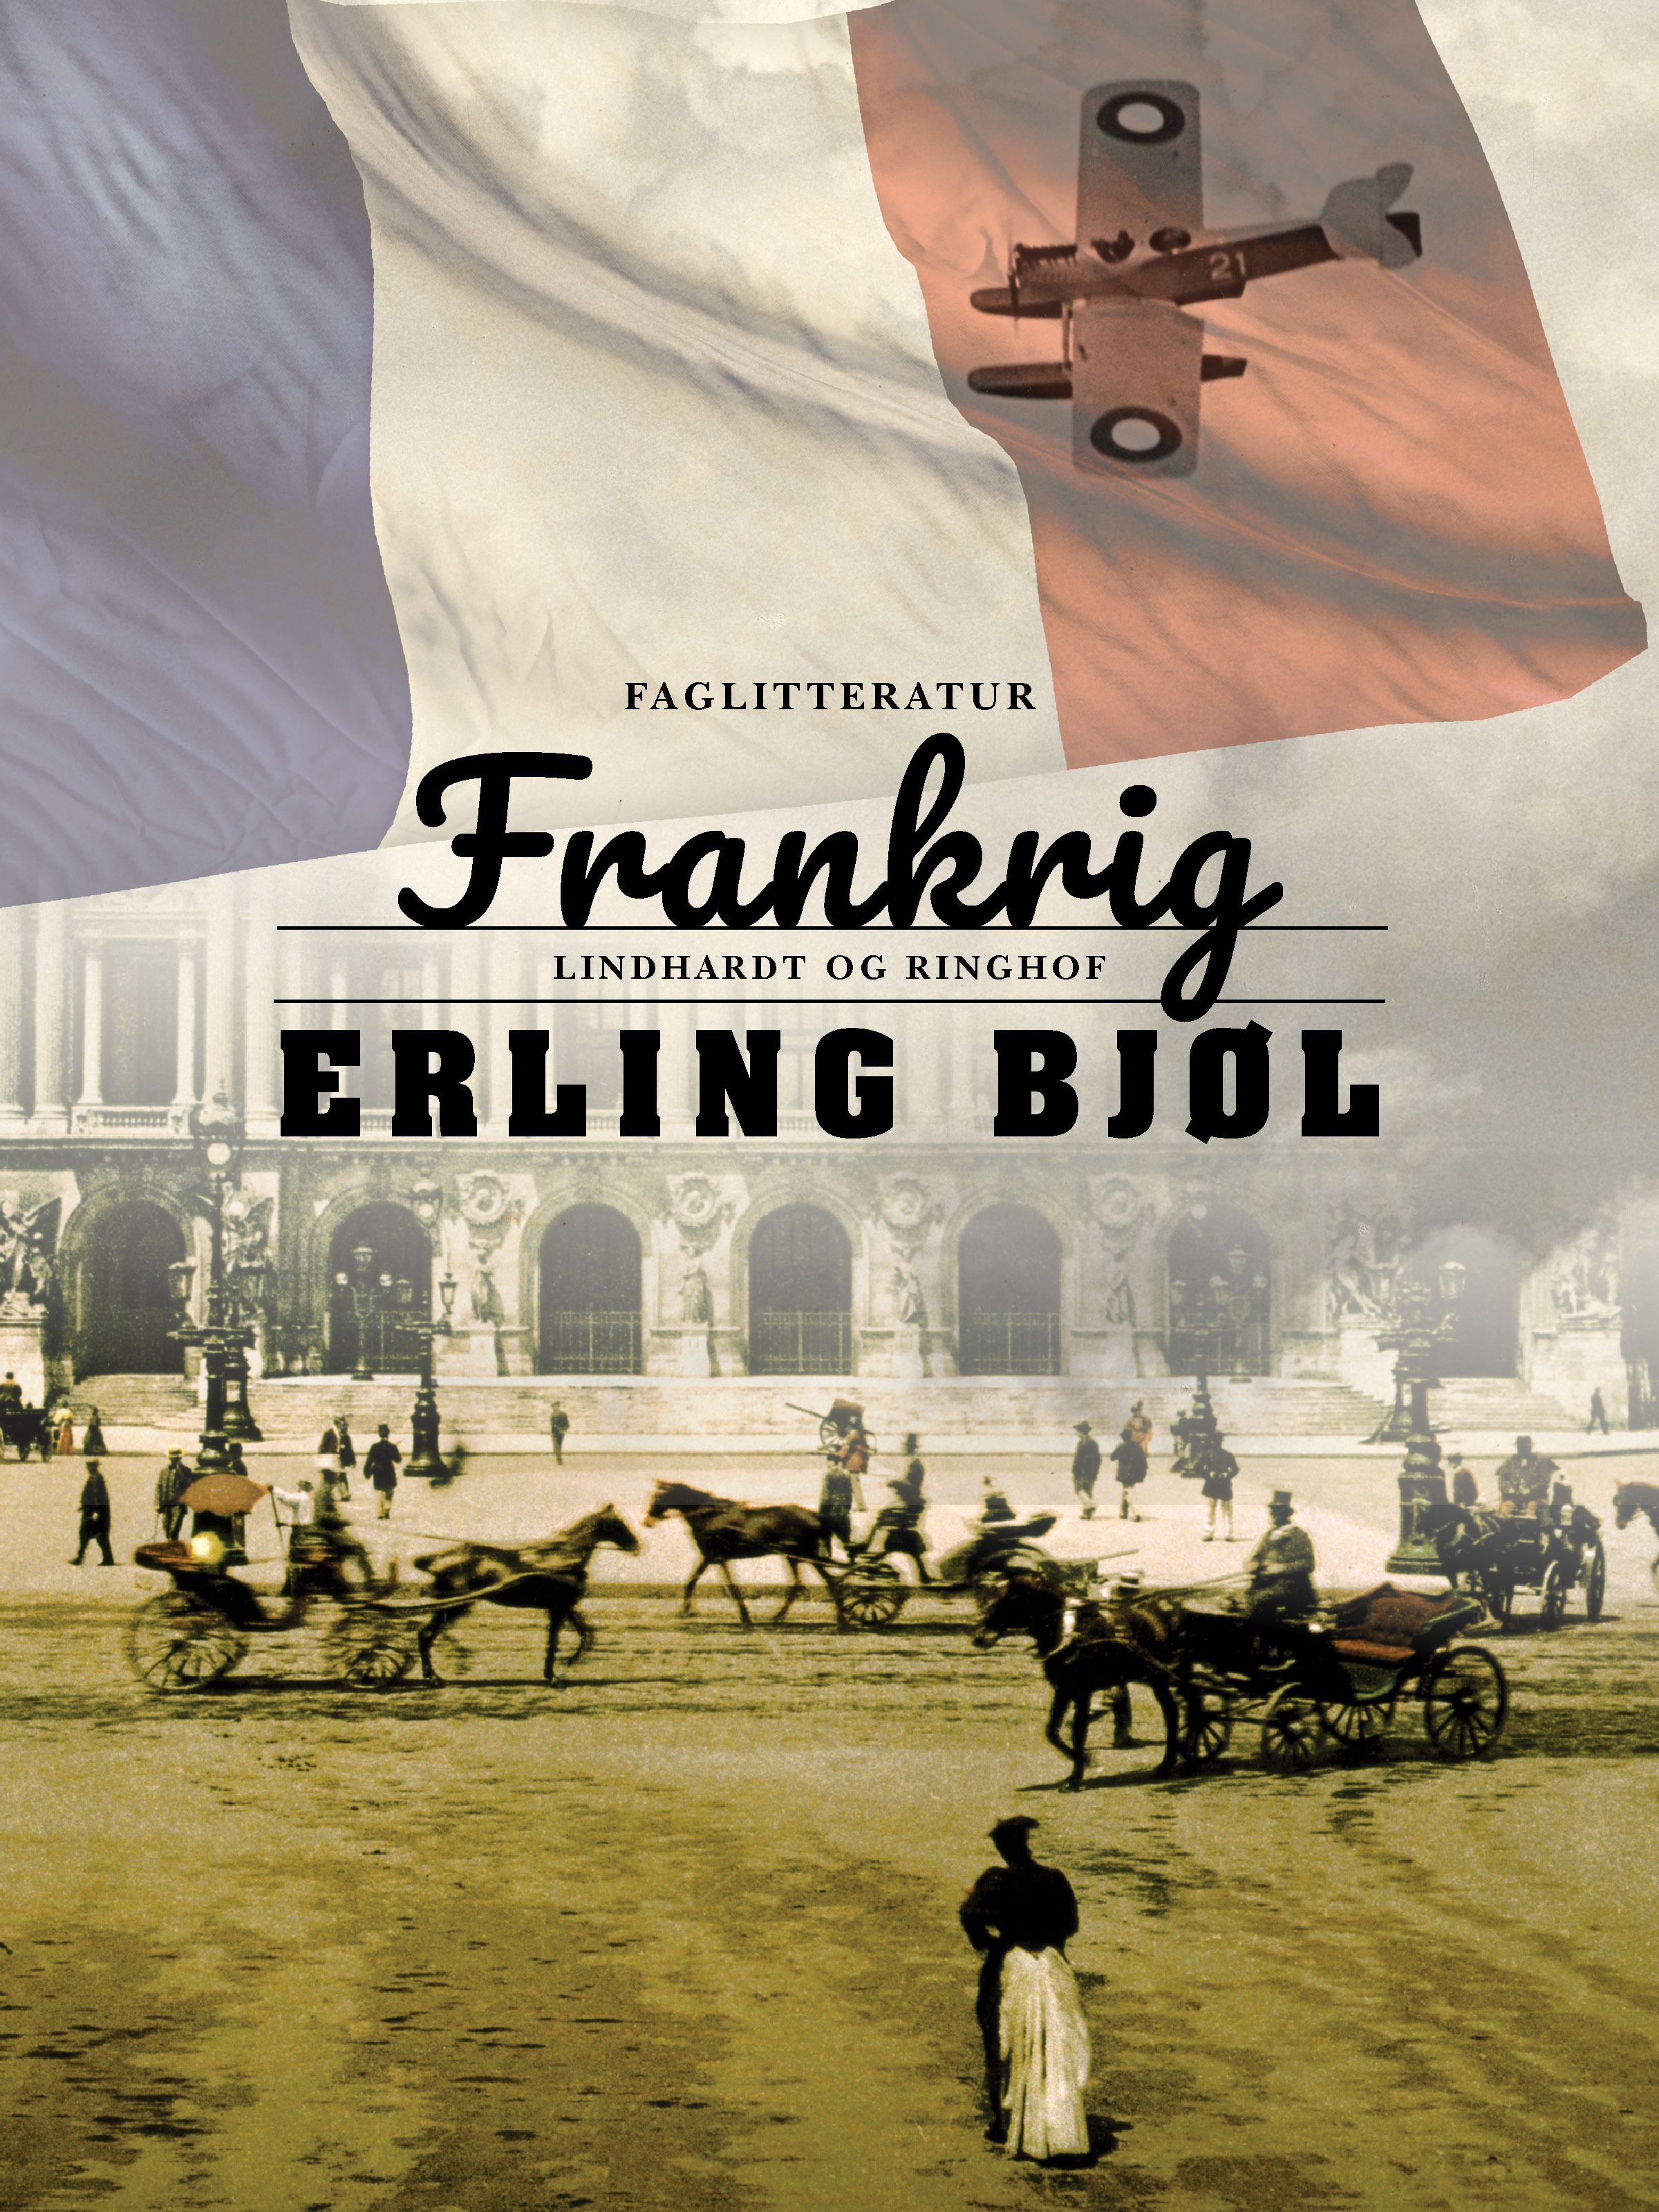 Frankrig, eBook by Erling Bjøl